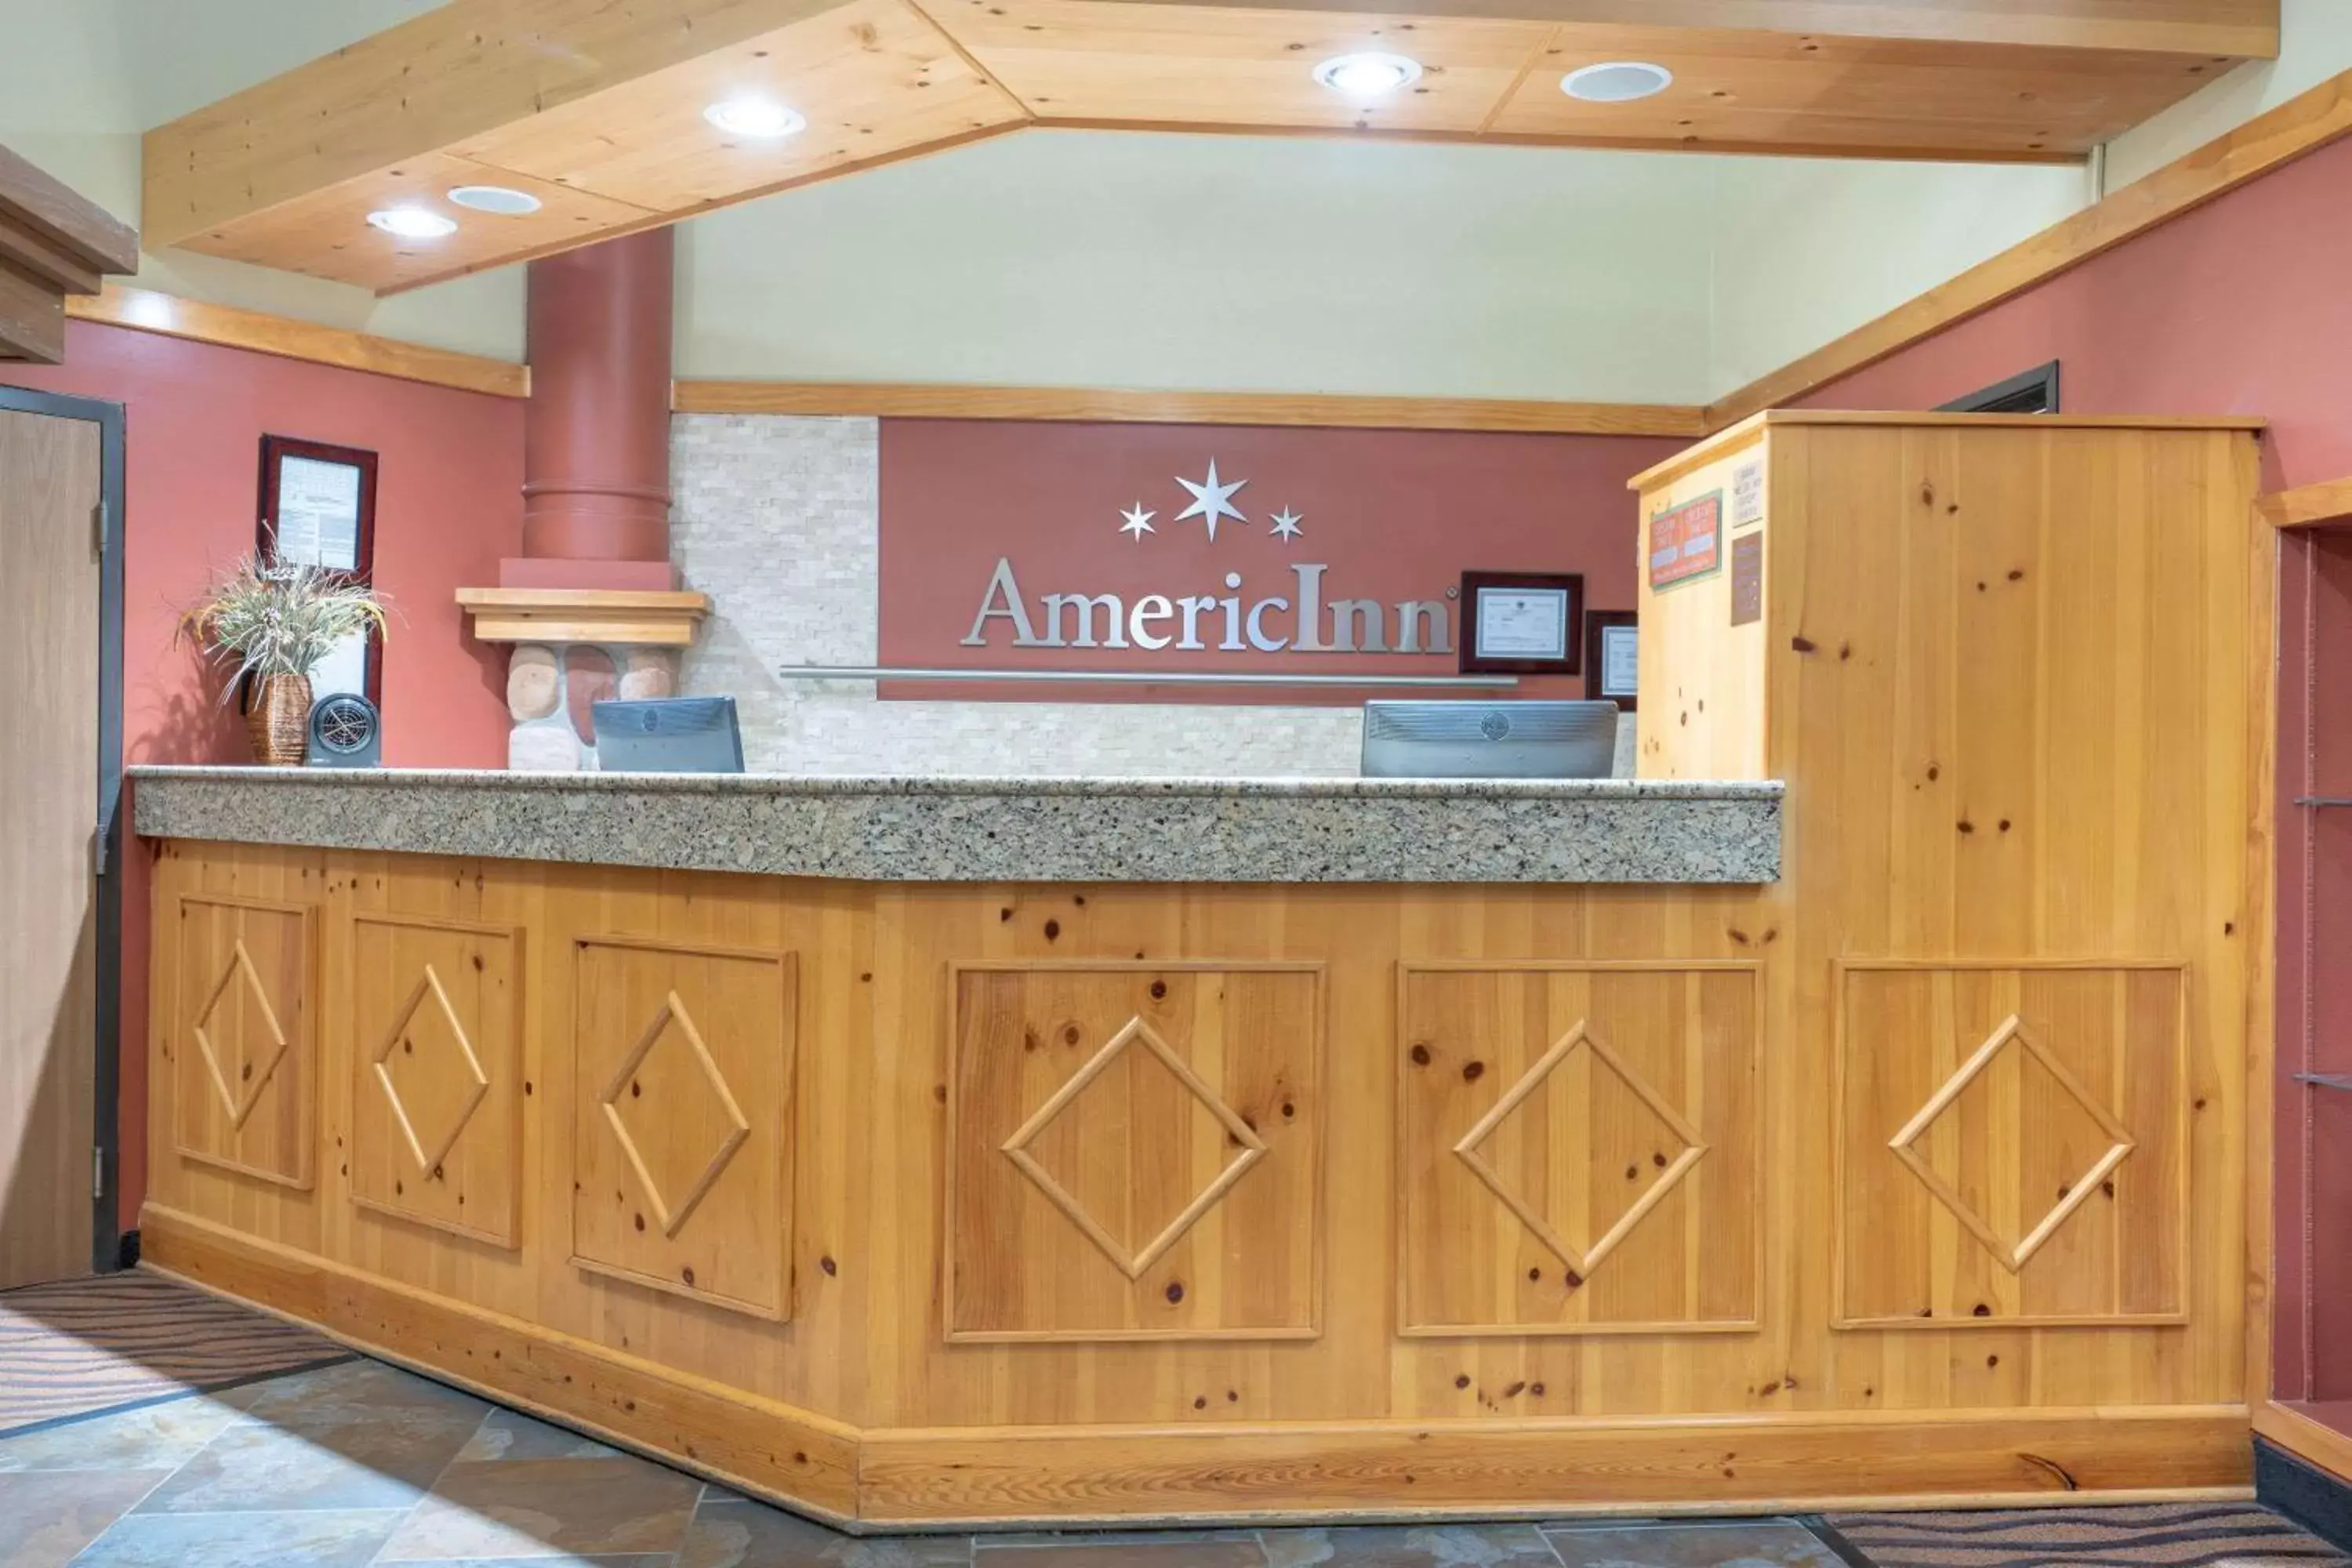 Lobby or reception, Lobby/Reception in AmericInn by Wyndham Rogers